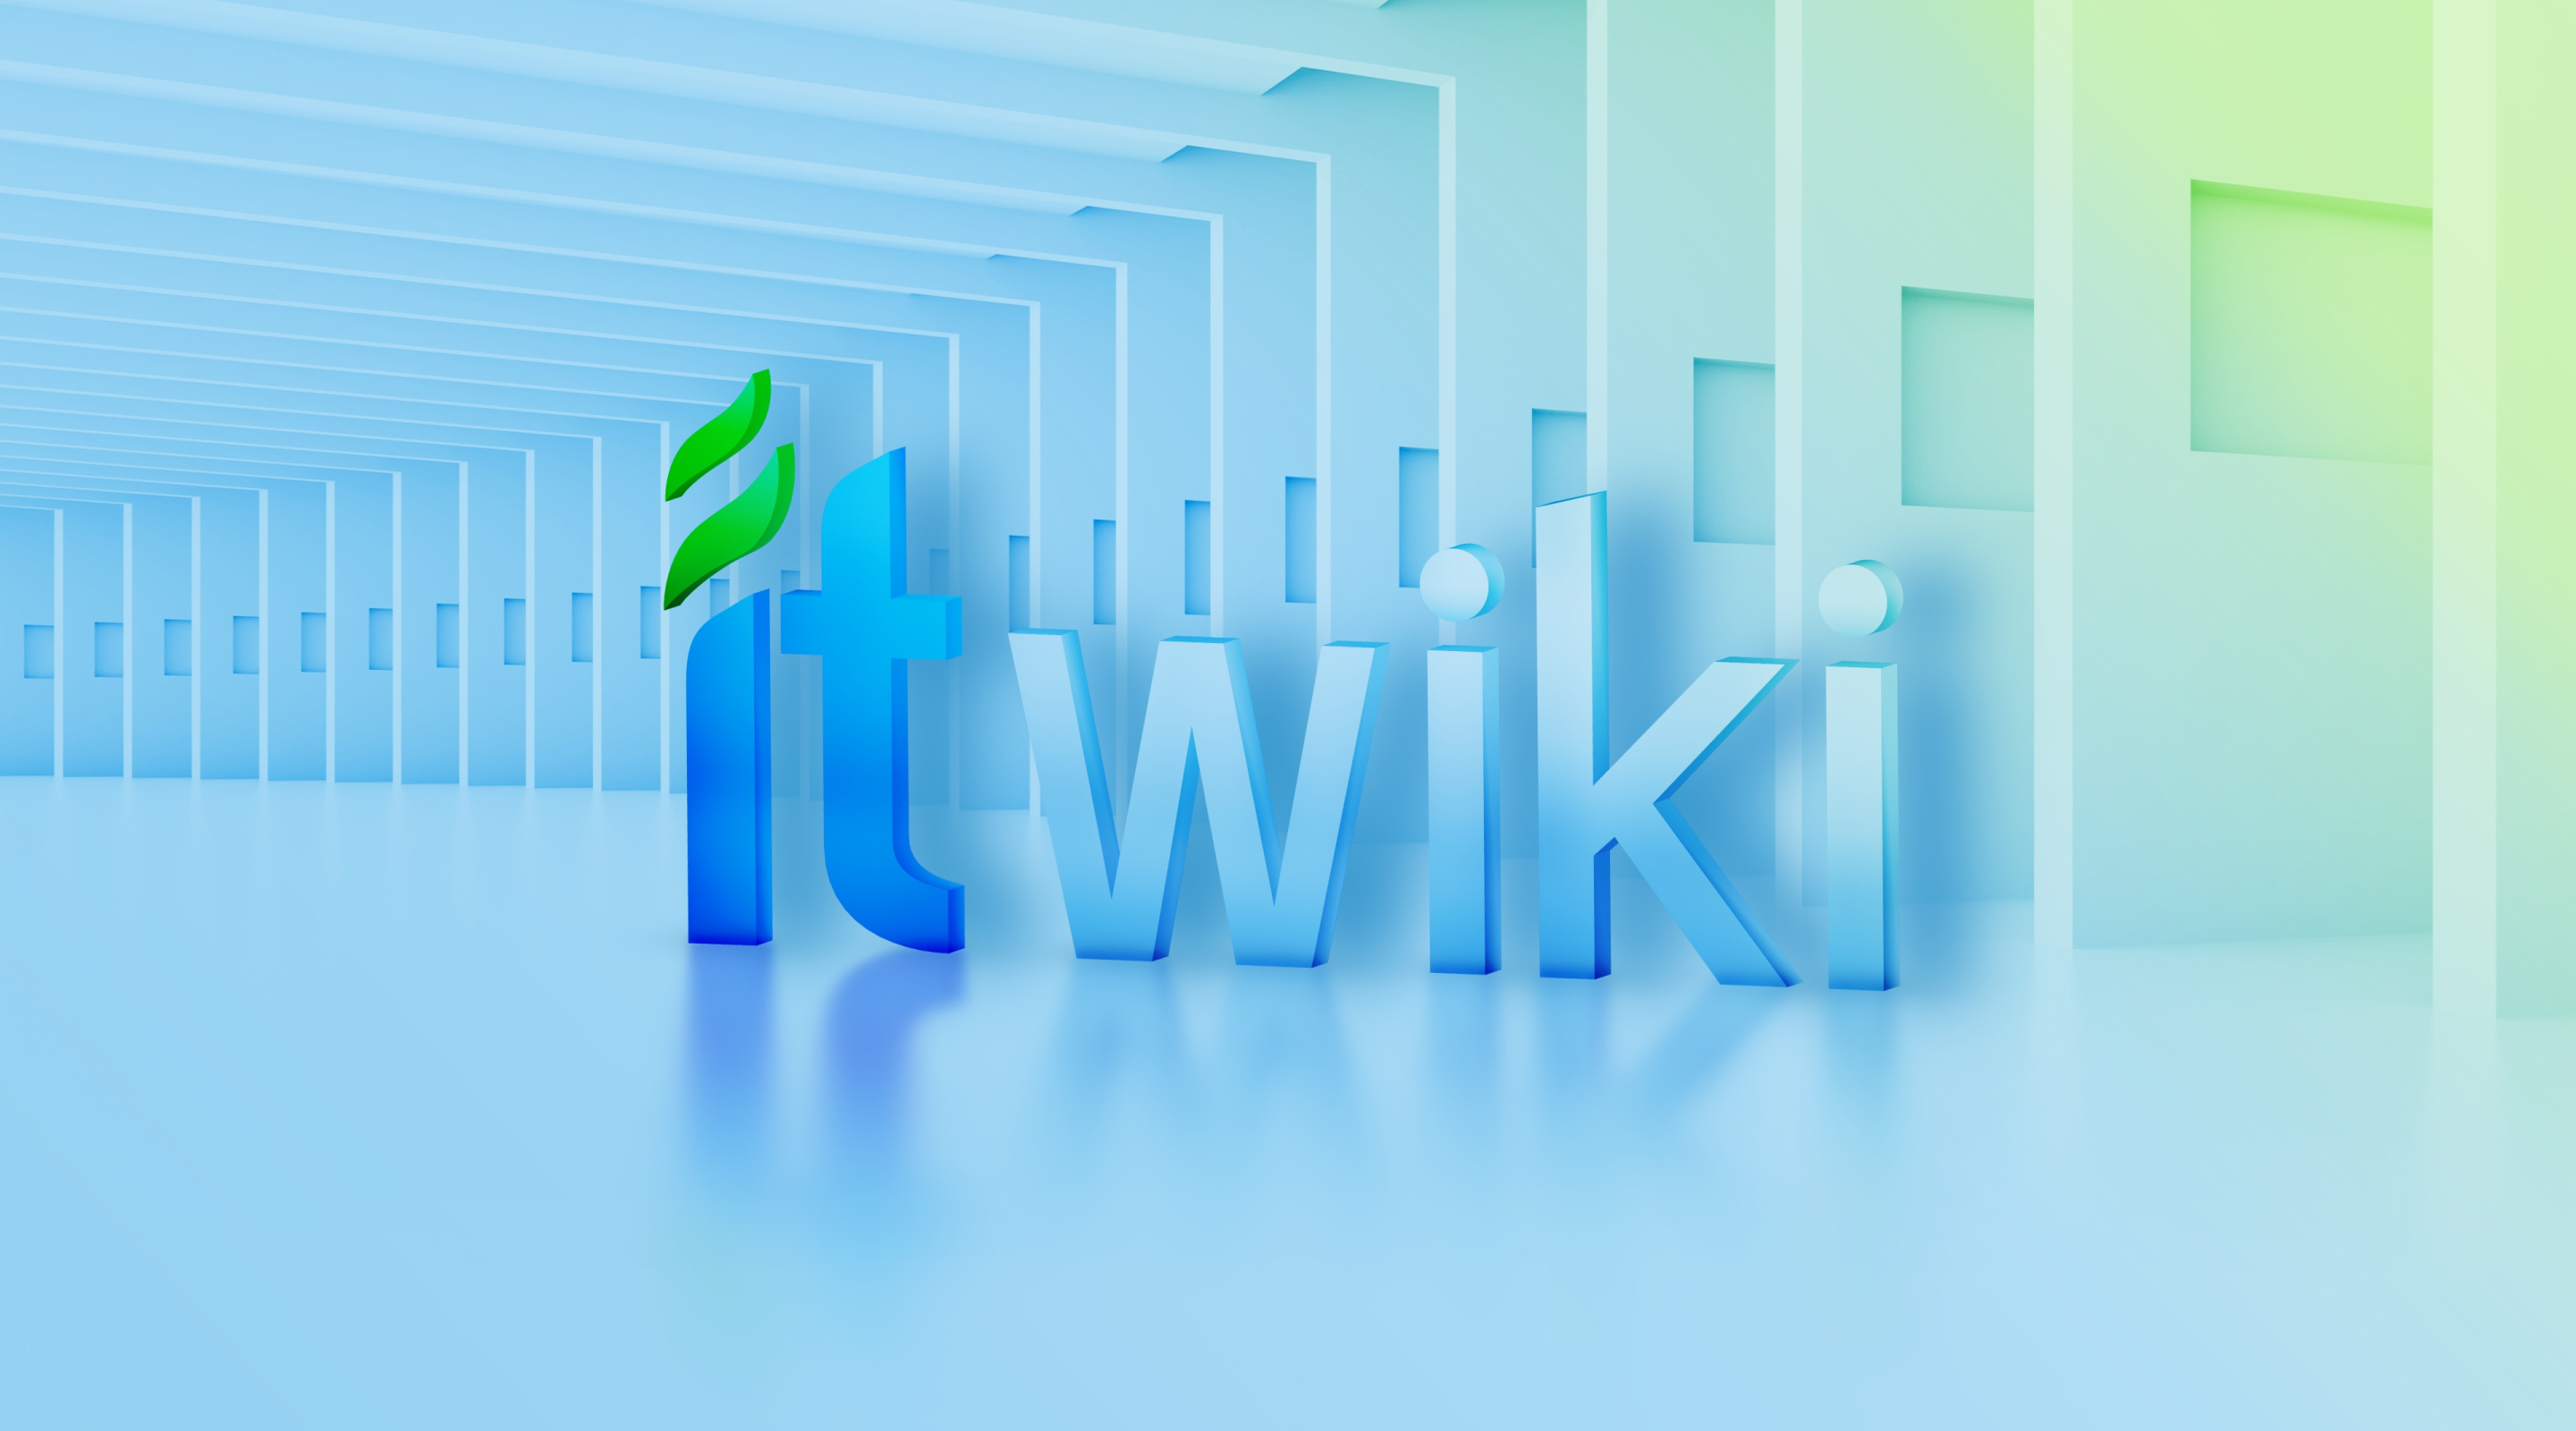 Состоялся запуск нашего ресурса ITWiki — универсального справочника для IT специалистов